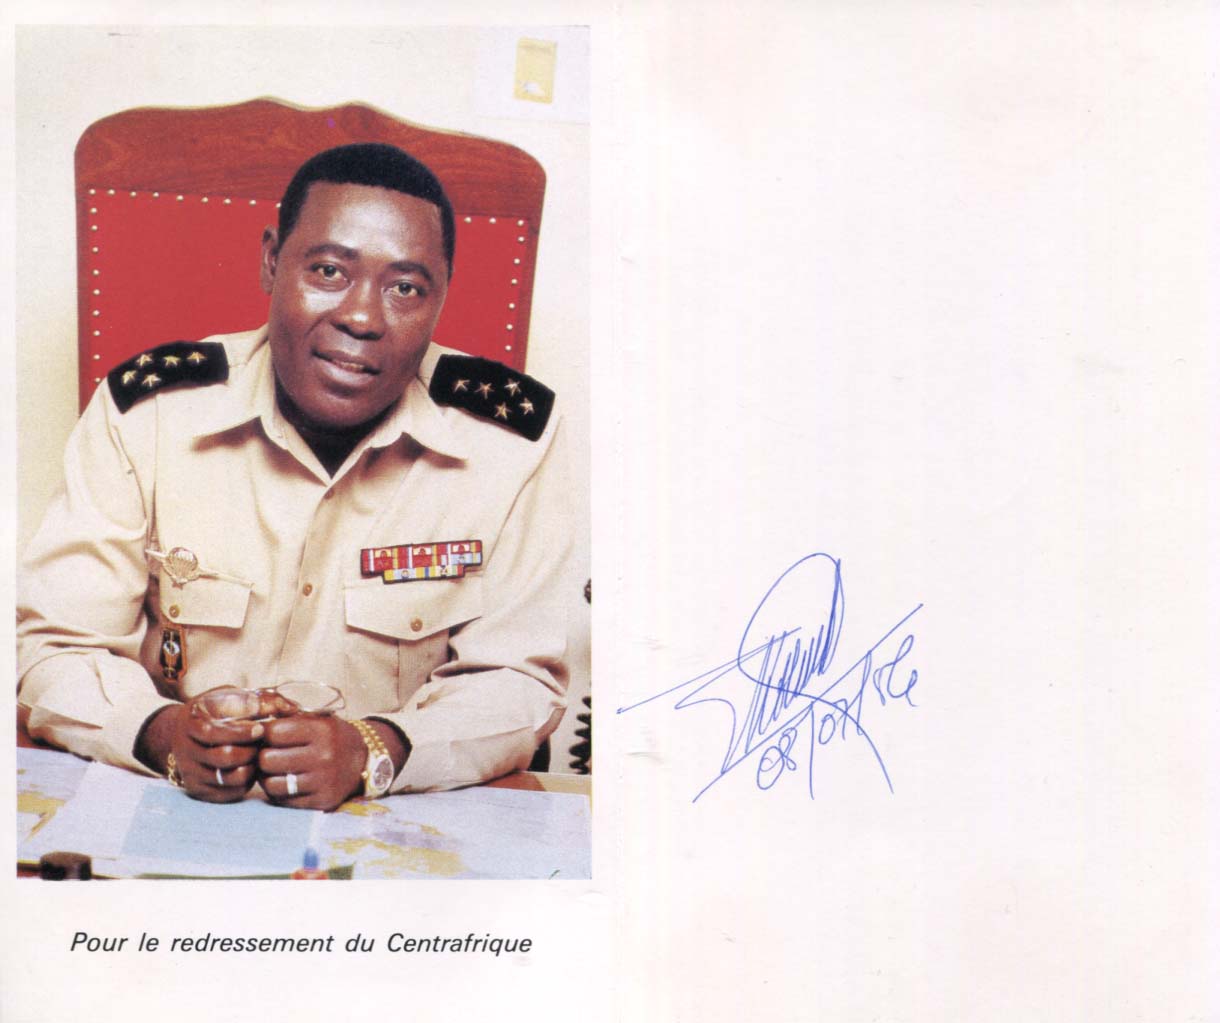 Andre-Dieudonne Kolingba Autograph Autogramm | ID 7799918493845